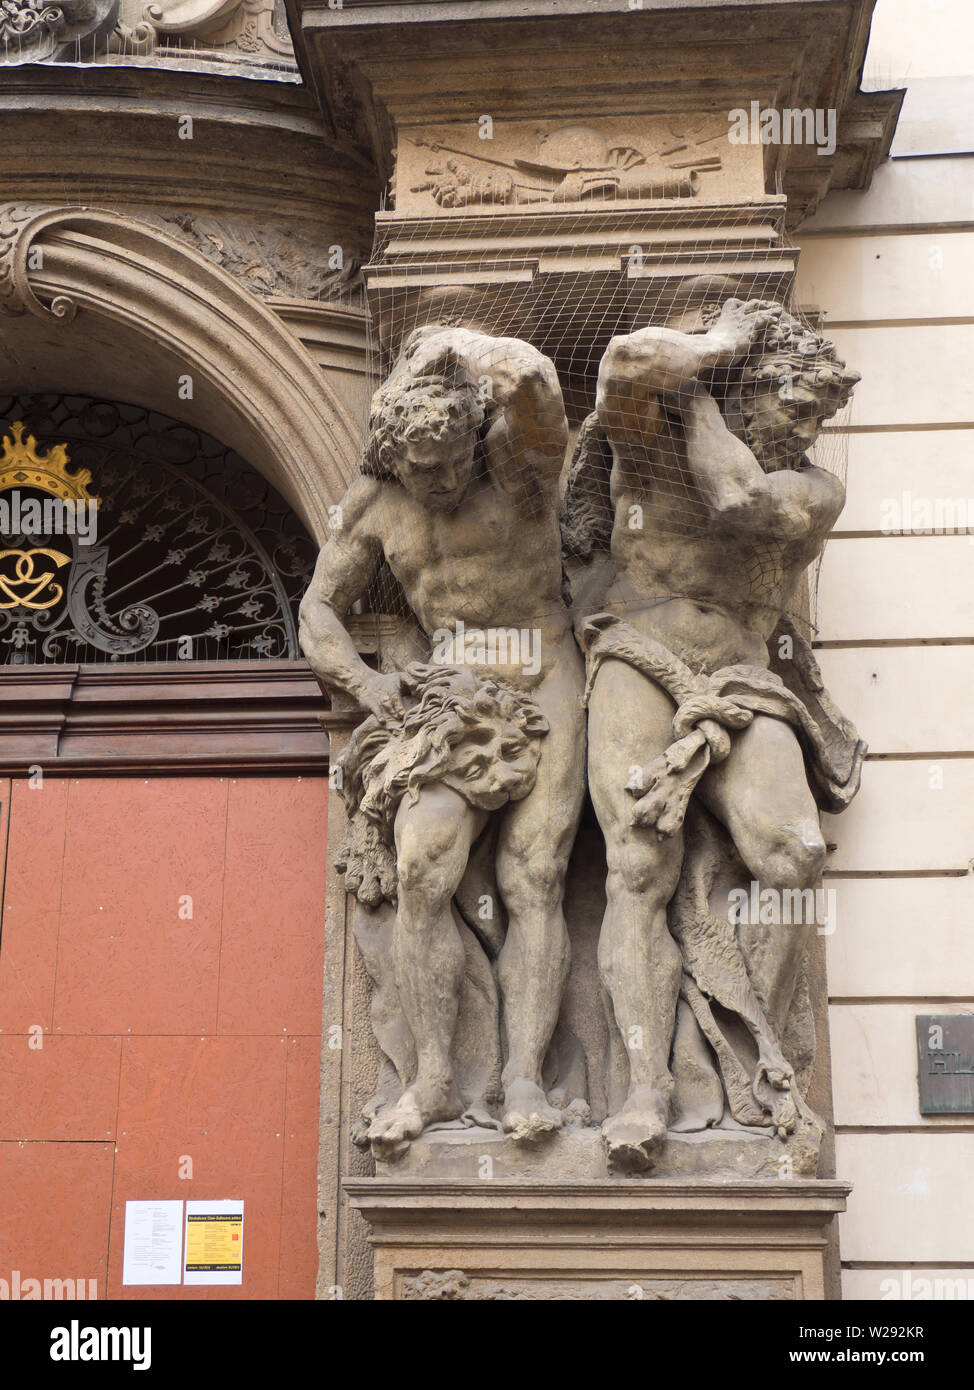 Fassade Kunst, Skulpturen von zwei starke Männer, die eine Spalte auf einer Fassade in Stare Mesto, Prag Tschechische Republik Stockfoto